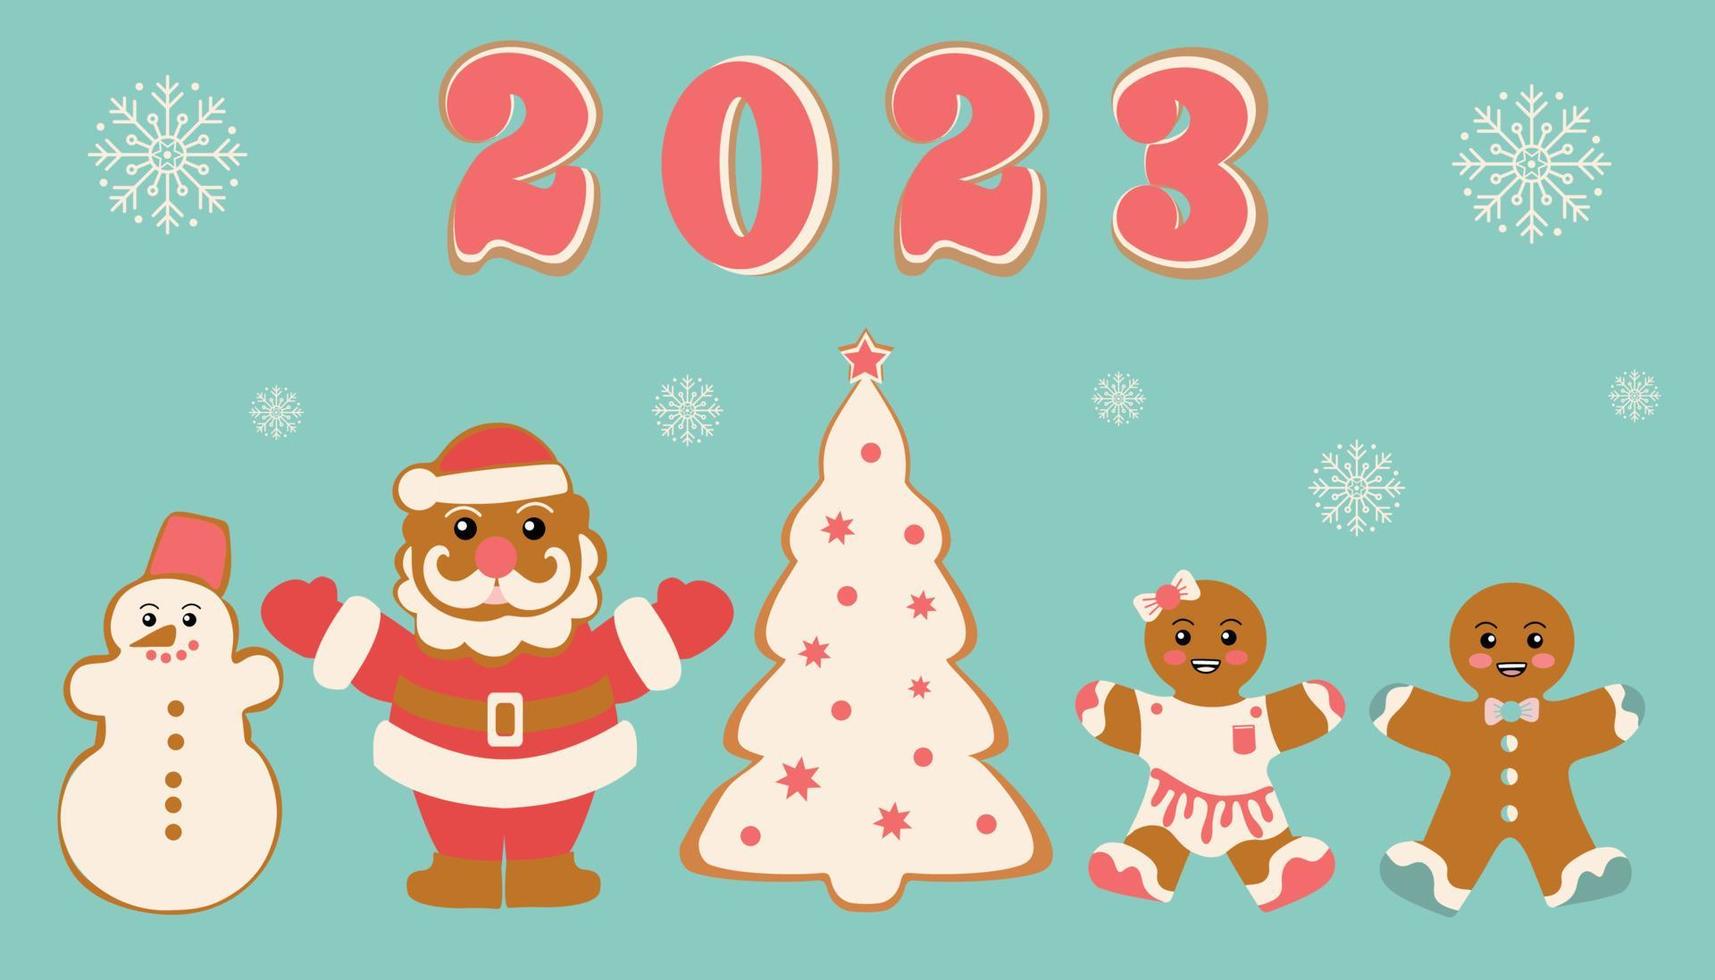 biscoitos festivos em forma de boneco de neve, papai noel, árvore de natal e homens de gengibre. feliz natal decoração. ano novo e celebração de natal vetor